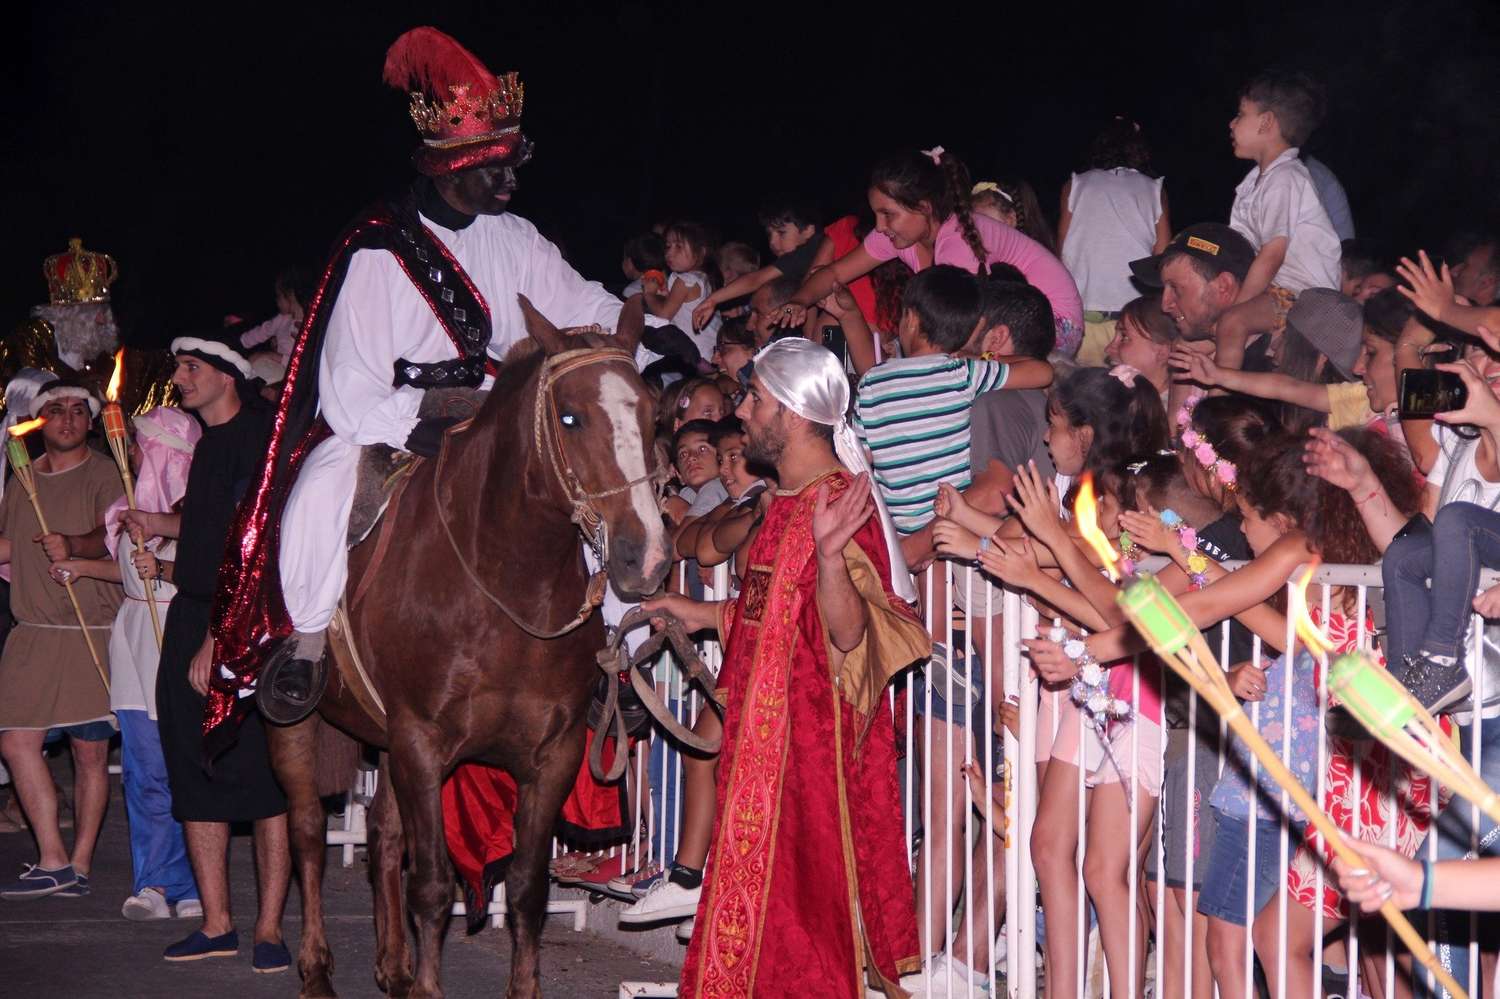 La “noche mágica” de la Fiesta de Reyes Magos en Sierras Bayas: “Hace seis décadas que se transmite generacionalmente”